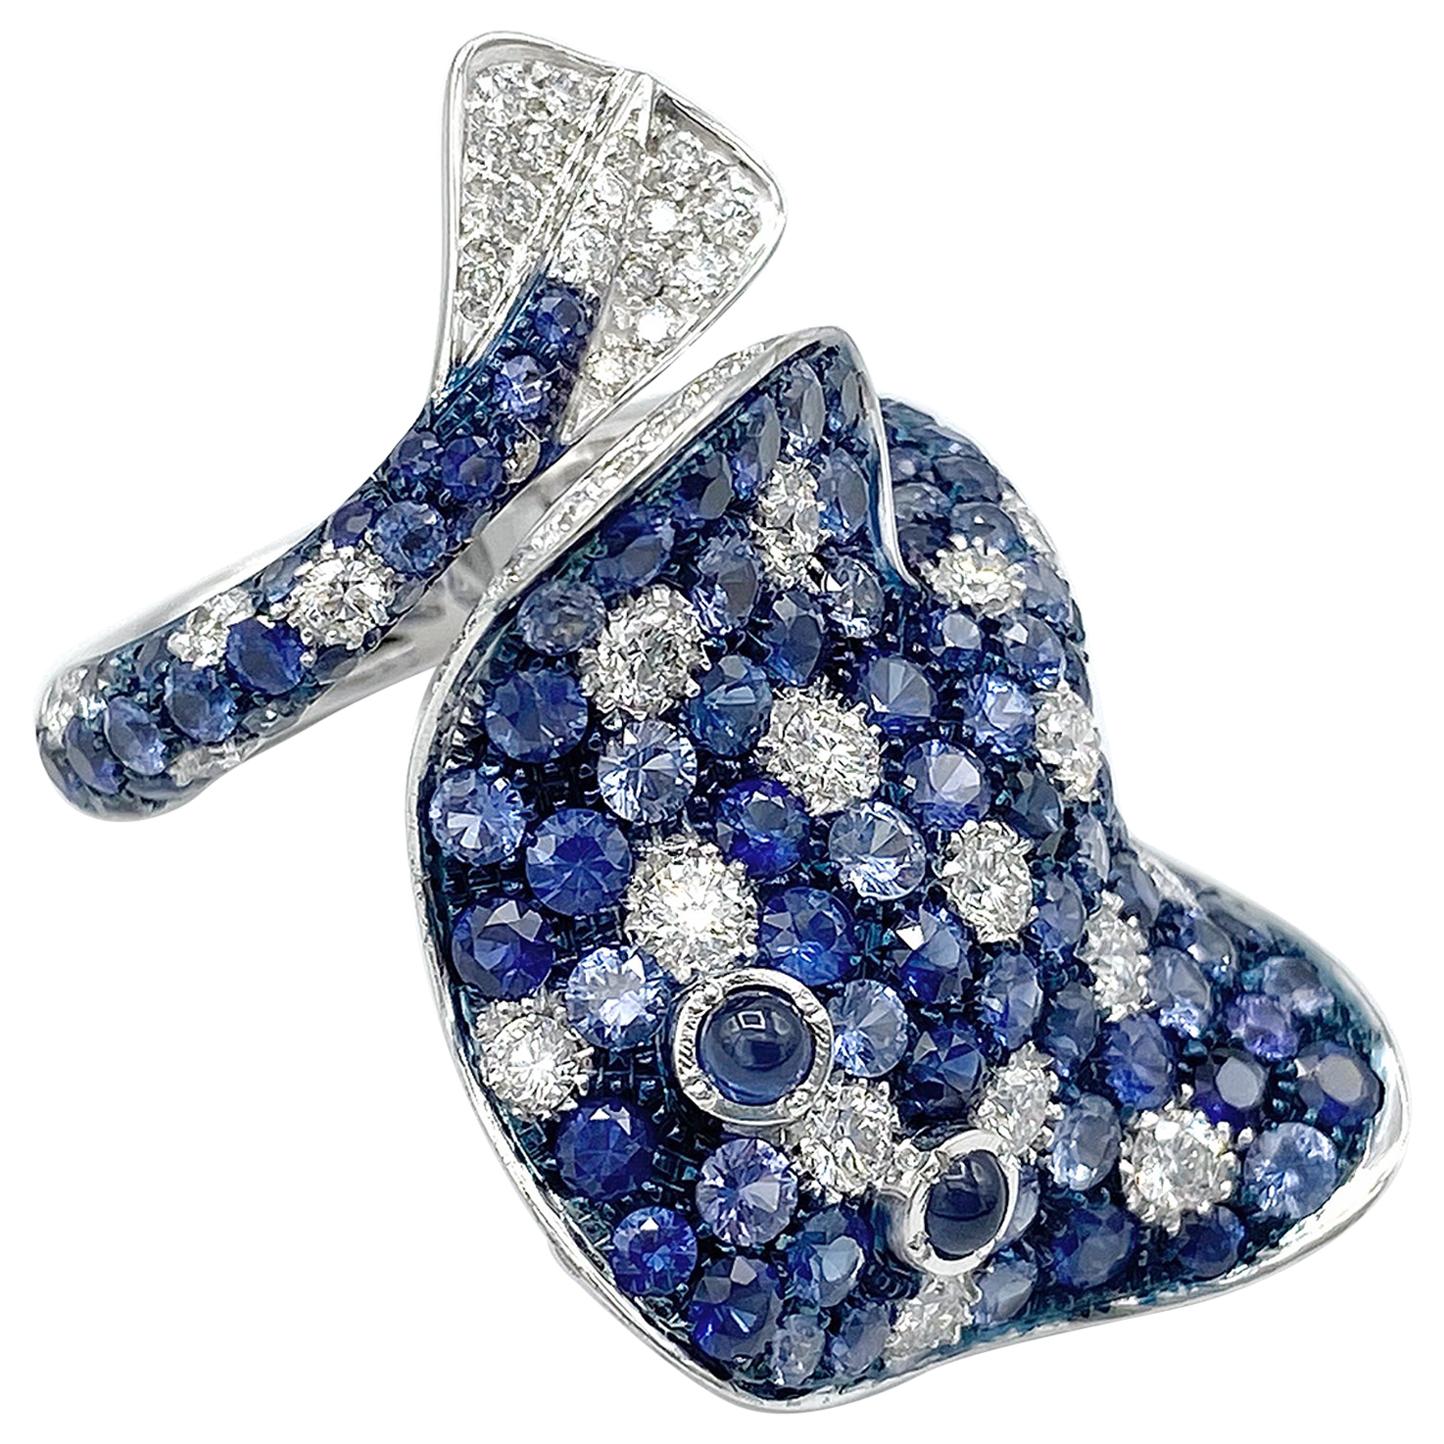 Bague Ray Fish en or 18 carats avec diamants blancs et saphirs bleus, fabrication italienne